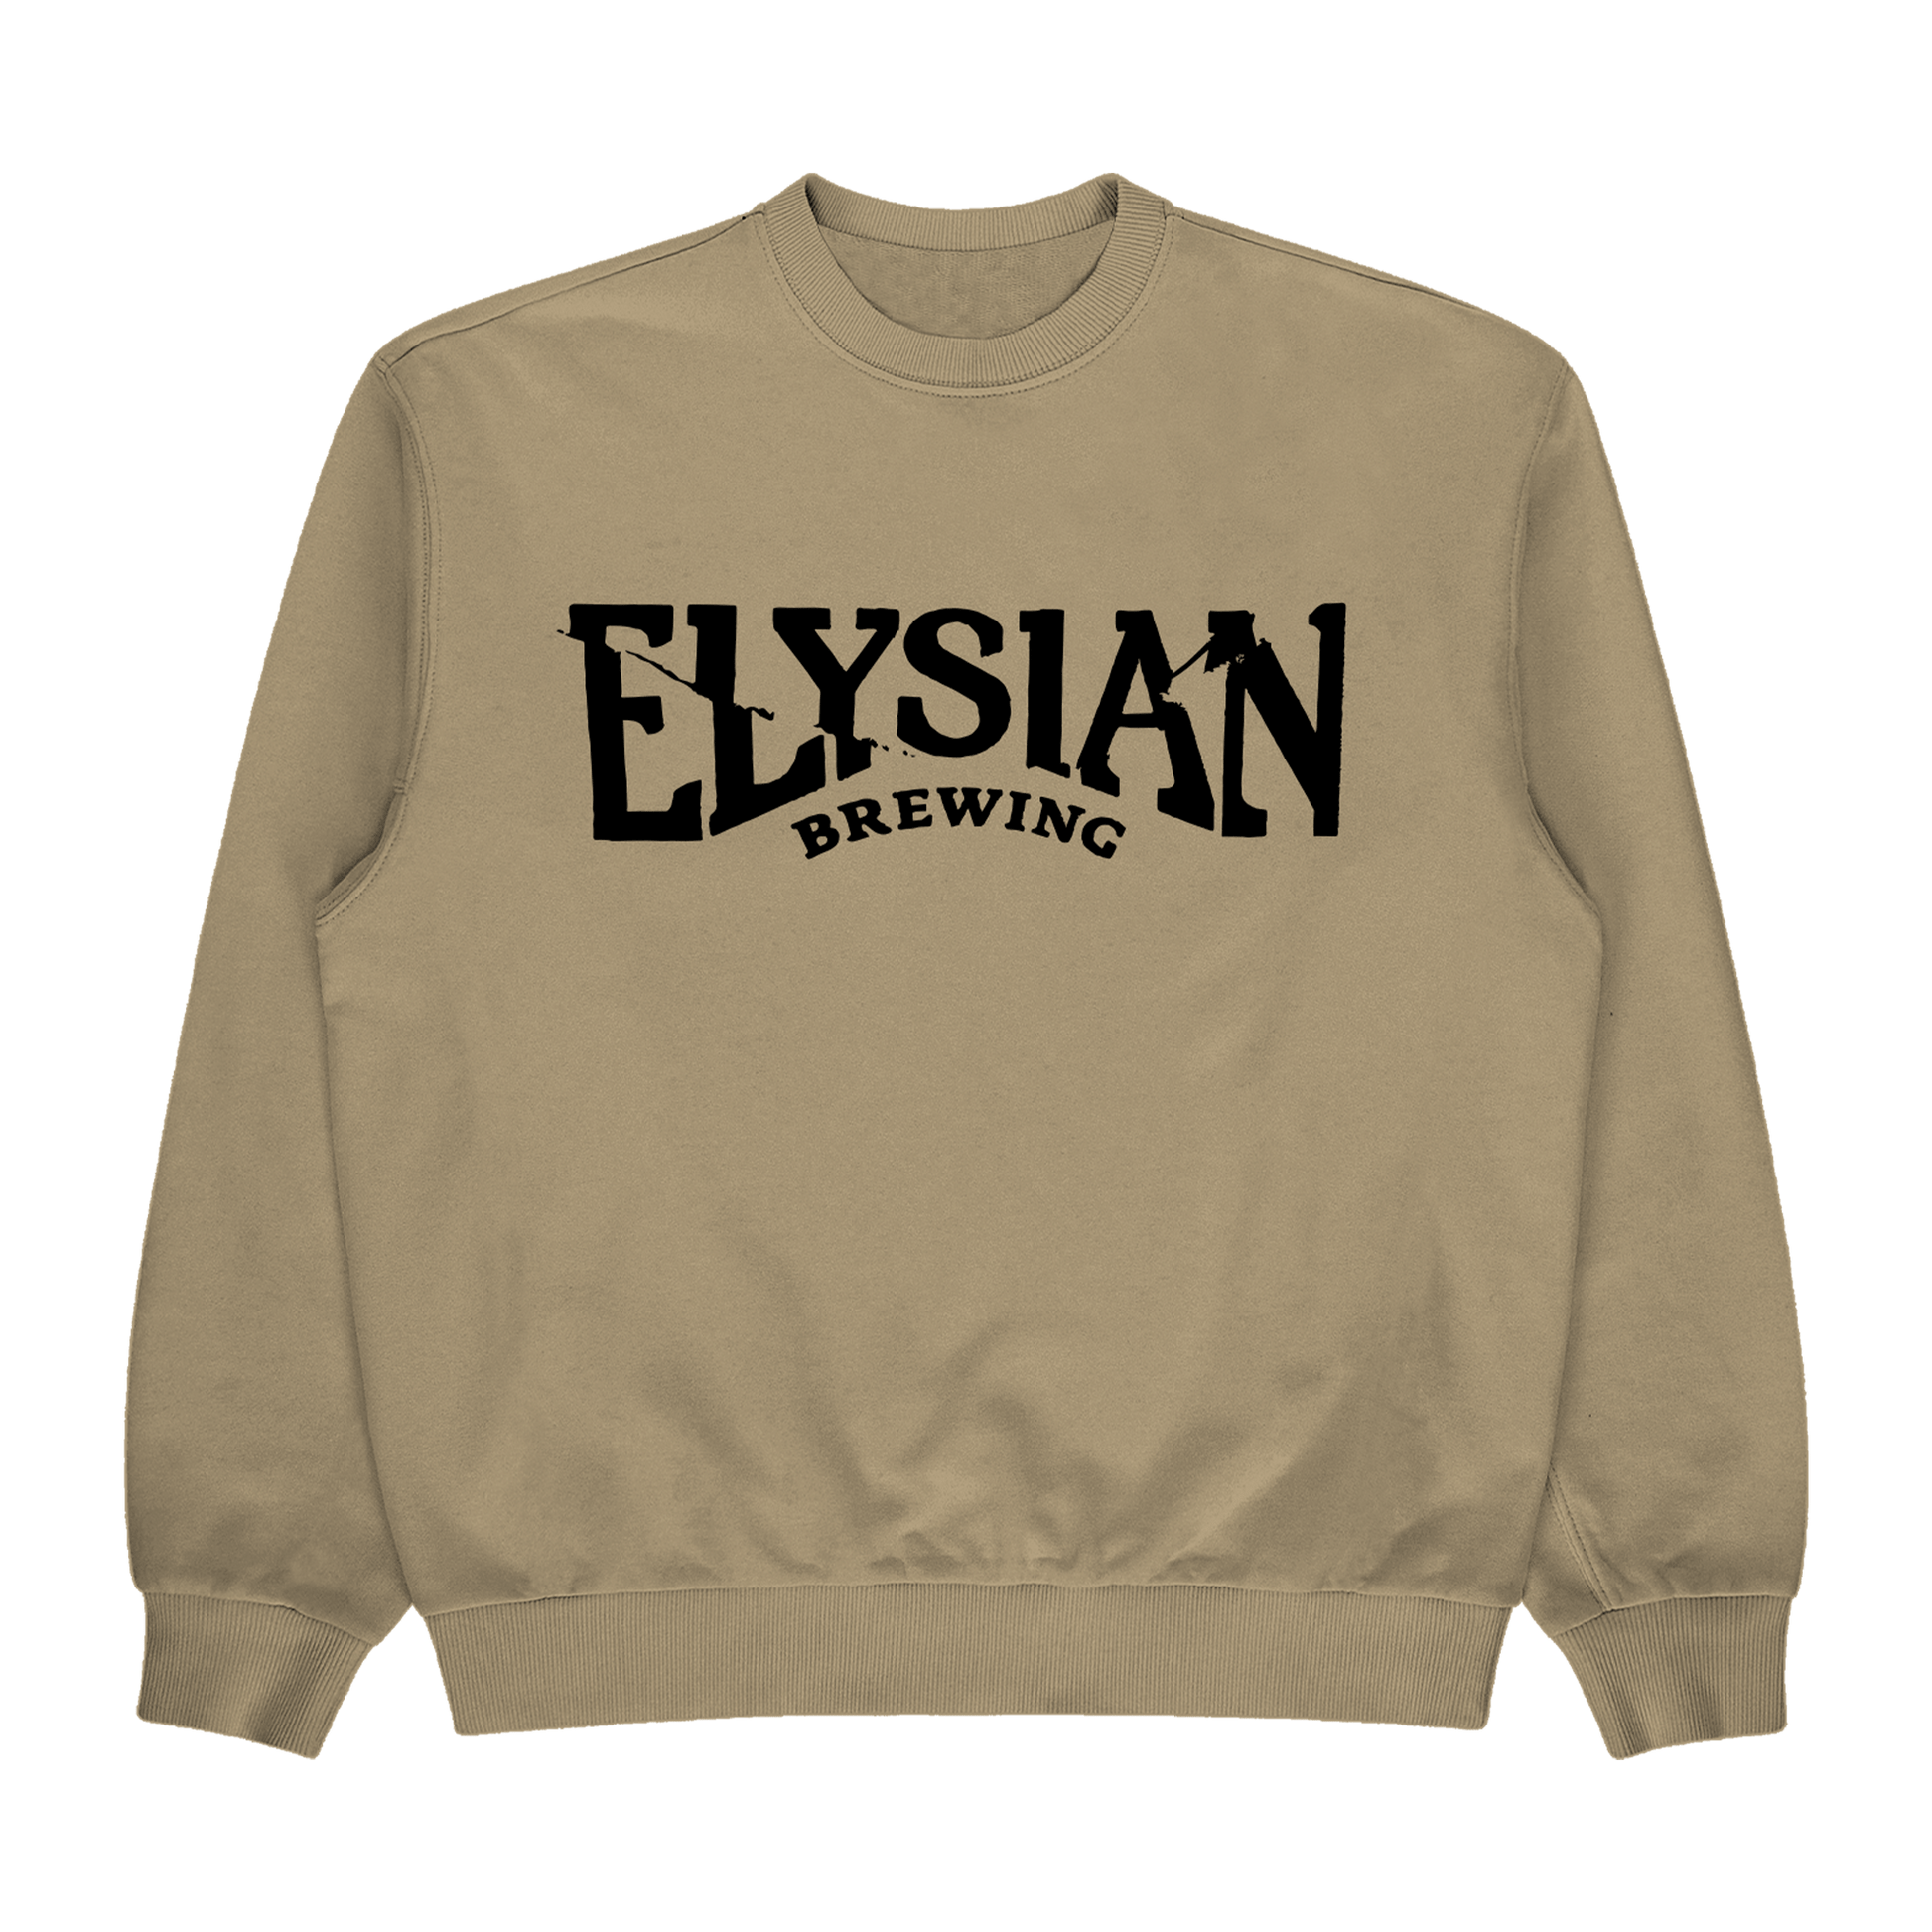 Elysian "25th" Tan Logo Crewneck - Elysian Brewing Company